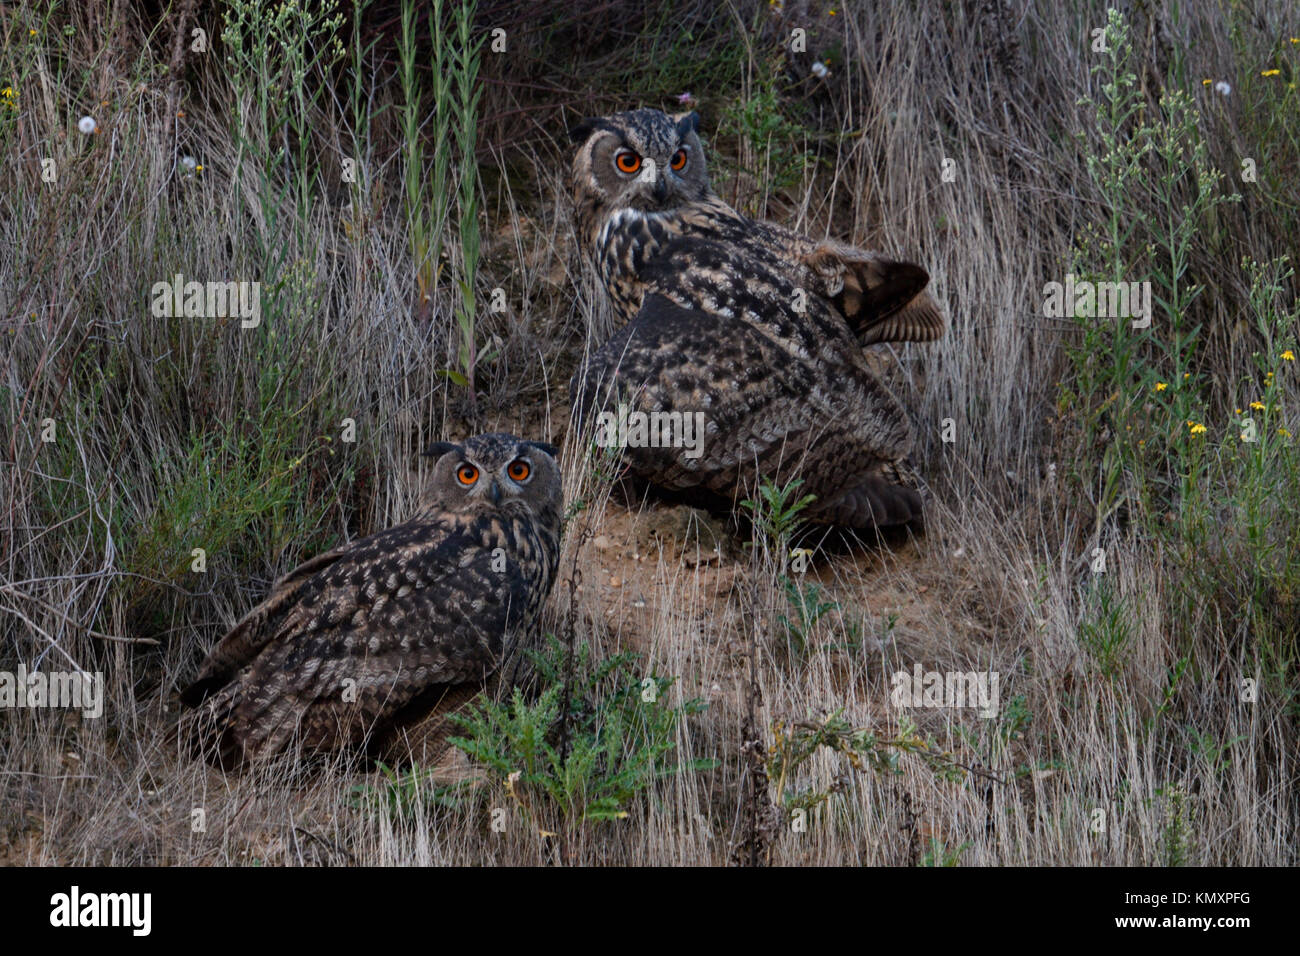 Grand Owl Bubo bubo / Owls ( ) assis ensemble dans la végétation d'une pente d'une gravière, regardant curieux, au crépuscule, la nuit tombée, la faune Banque D'Images